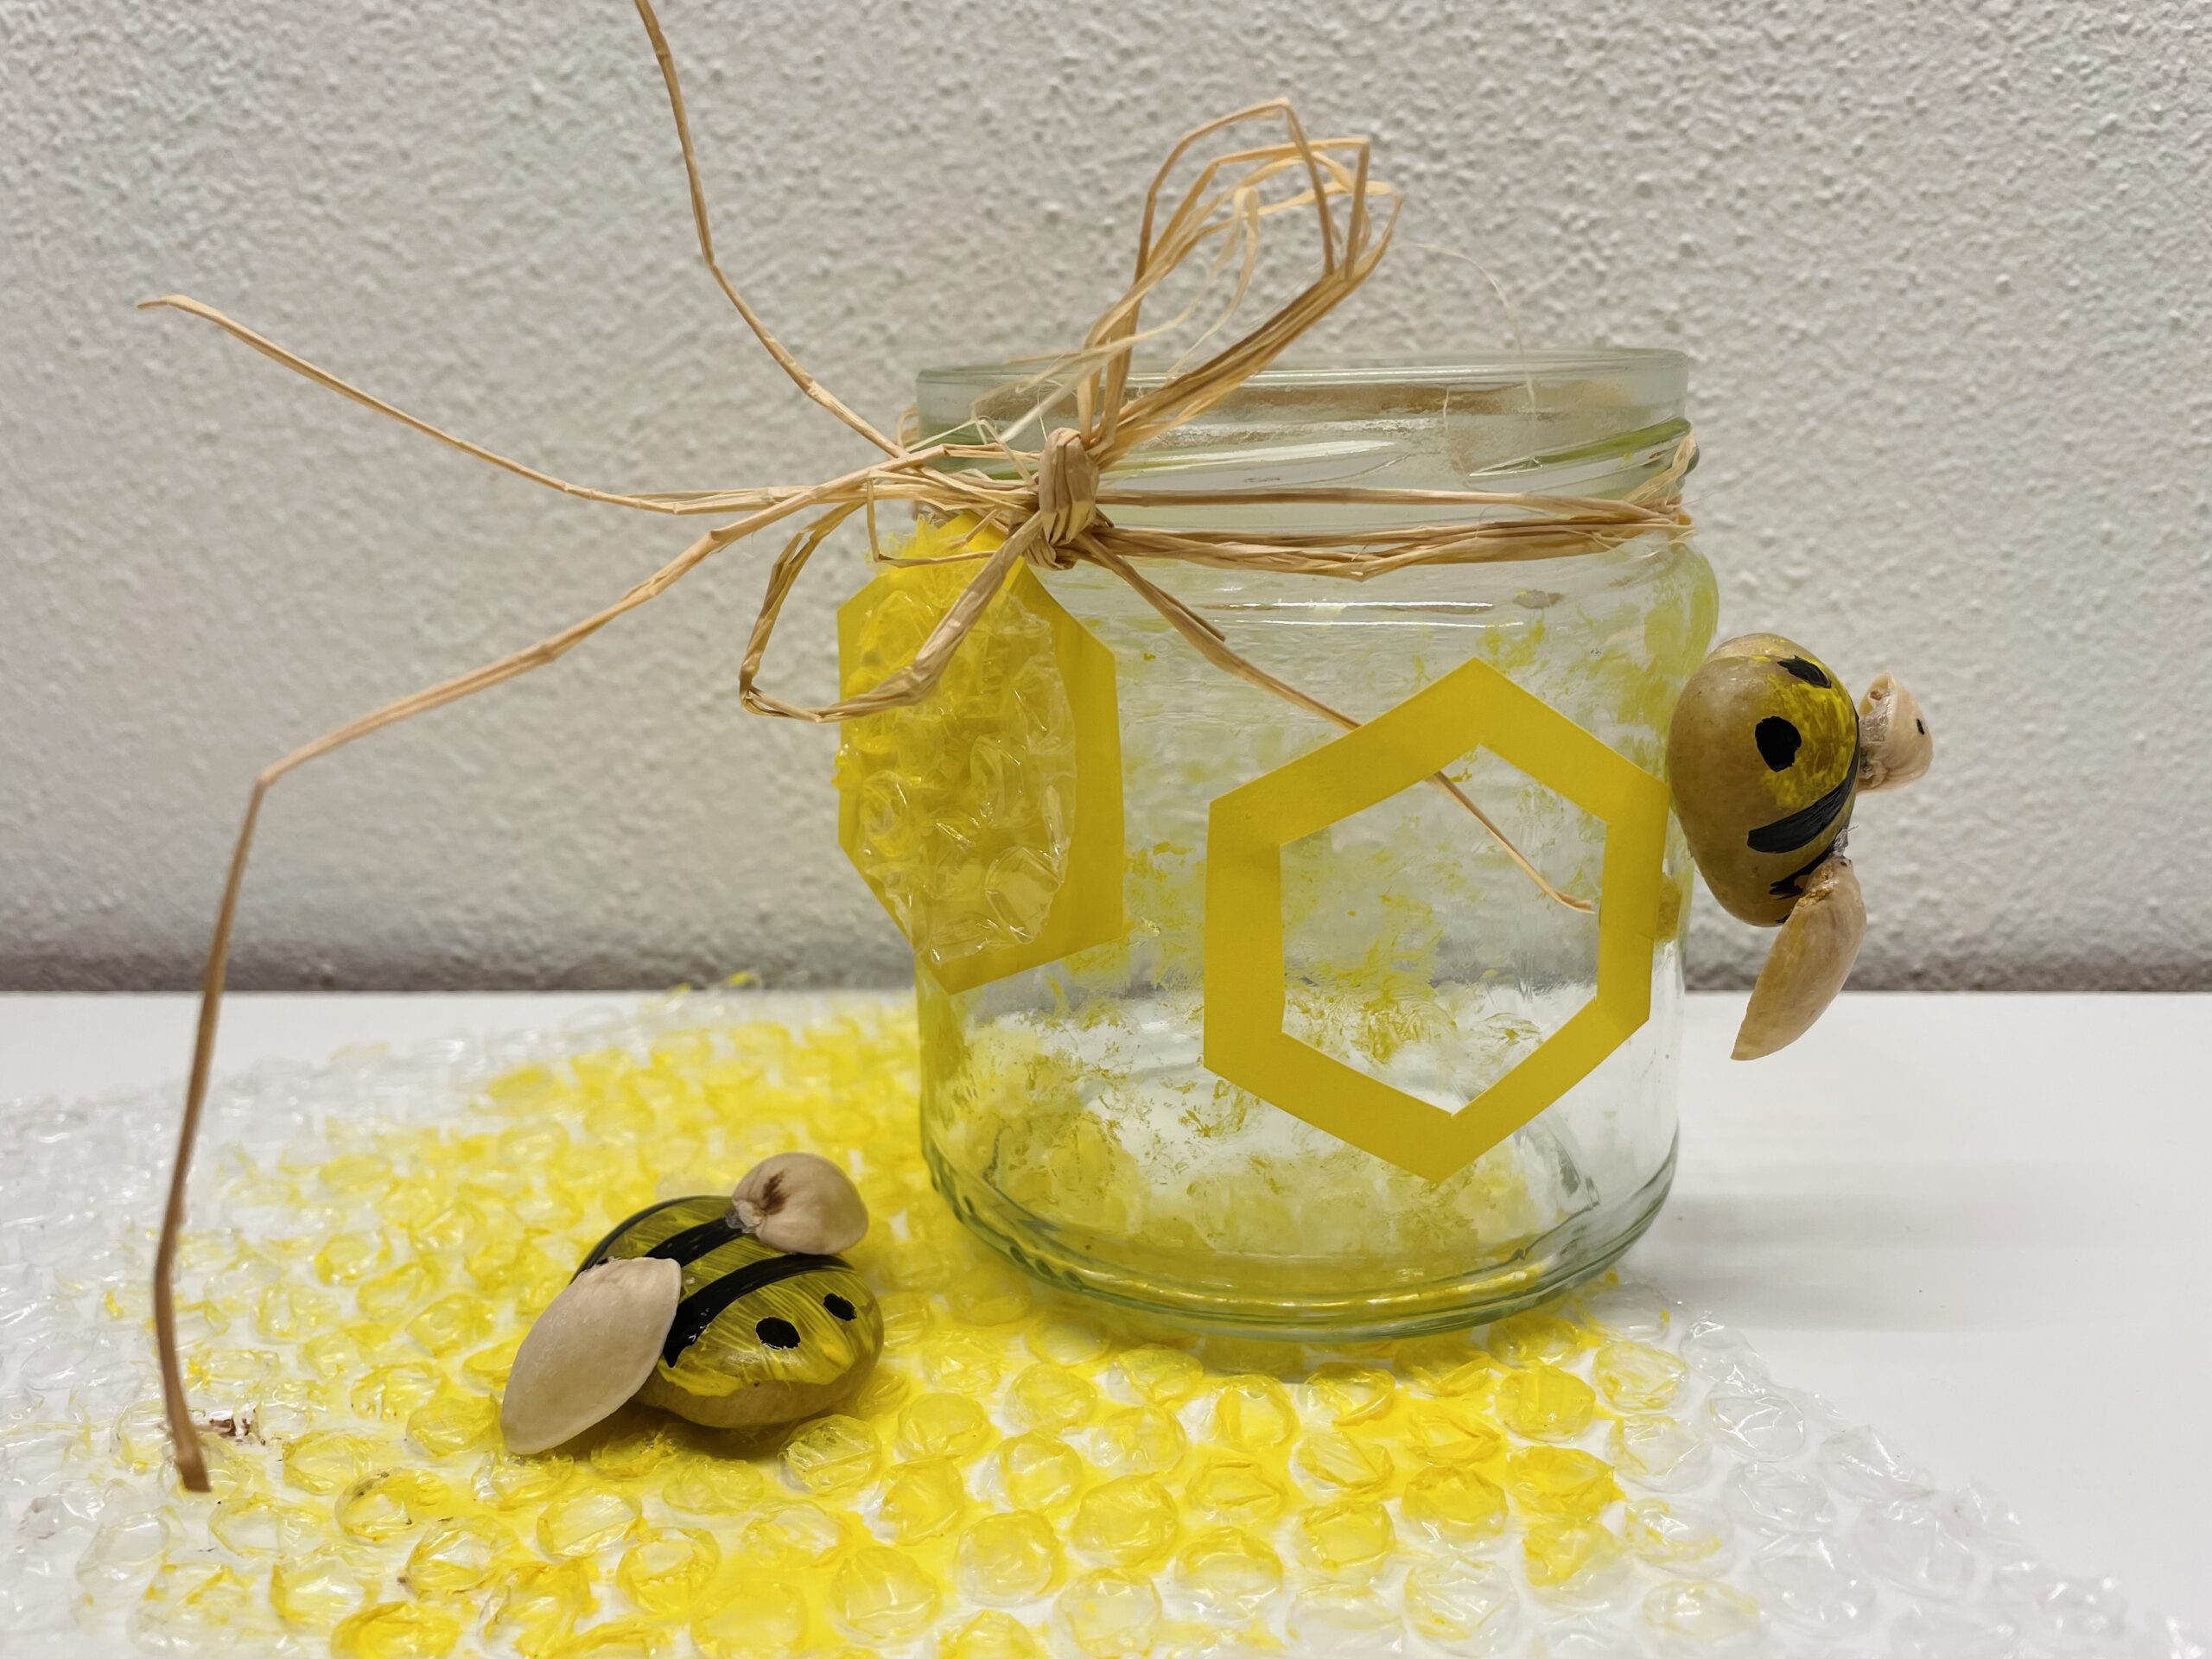 Bild zum Schritt 21 für das Bastel- und DIY-Abenteuer für Kinder: 'Fertig ist das Bienen-Waben-Glas. Ihr könnt das Glas auf einem...'